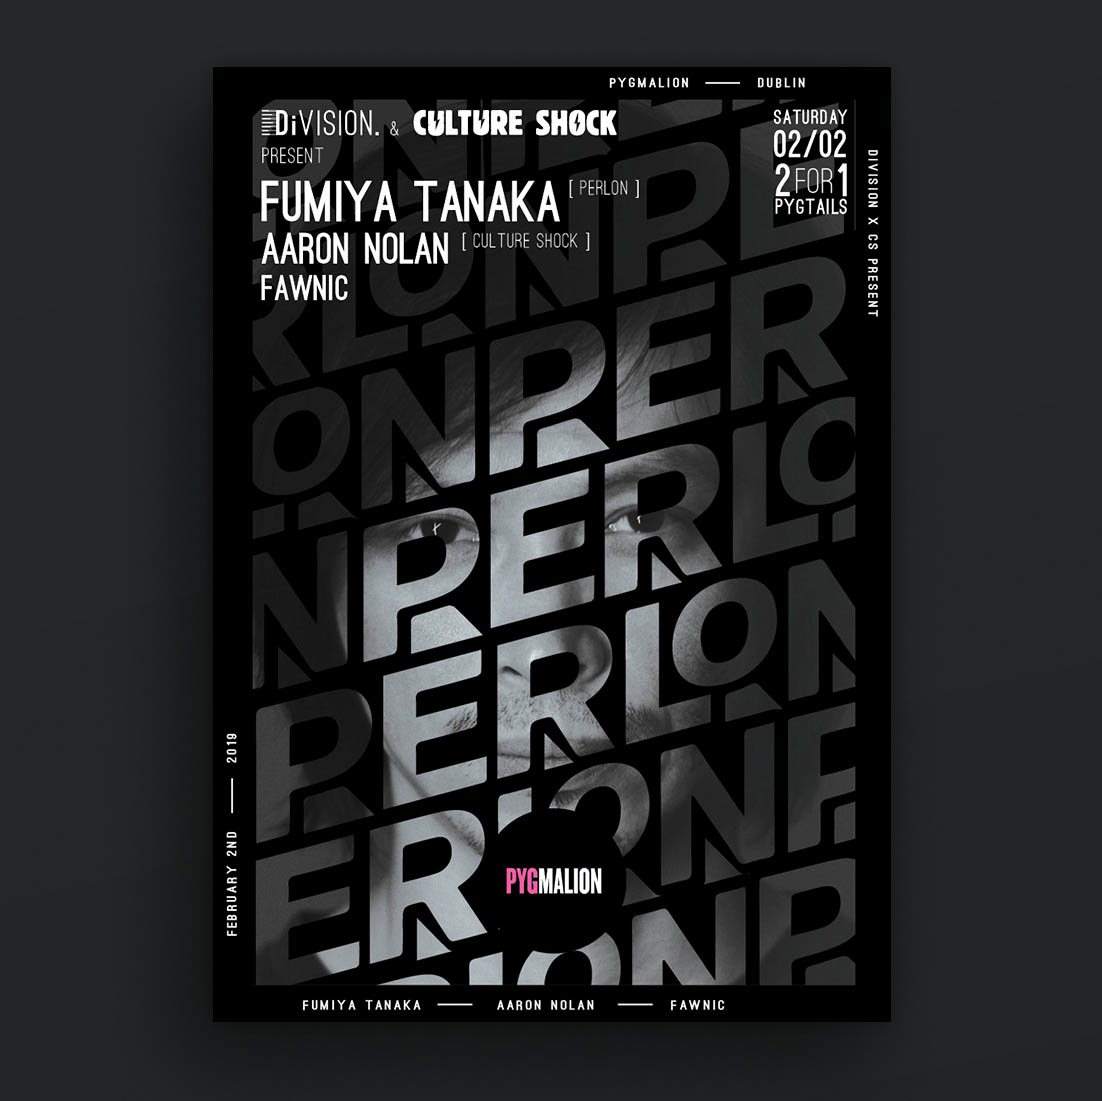 Division x Culture Shock: Fumiya Tanaka (Perlon) - Página frontal